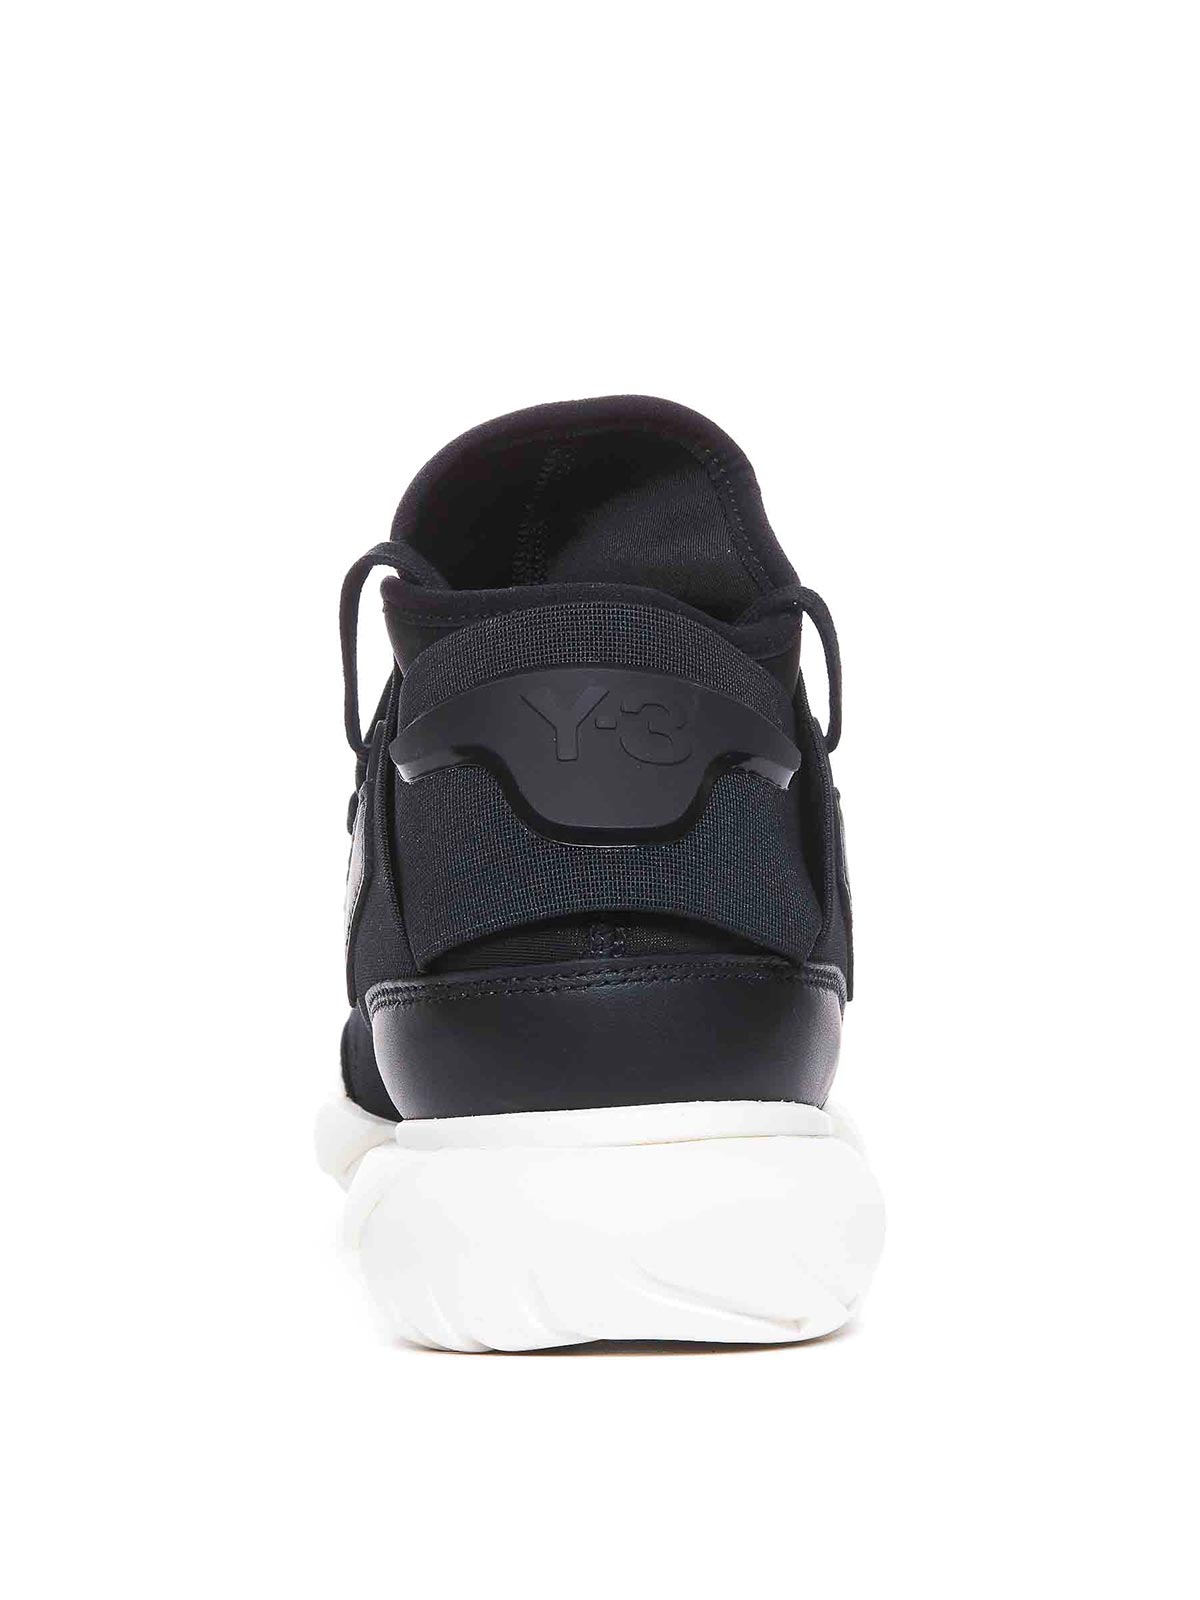 Shop Y-3 Black Qasa Sneakers Laces Round